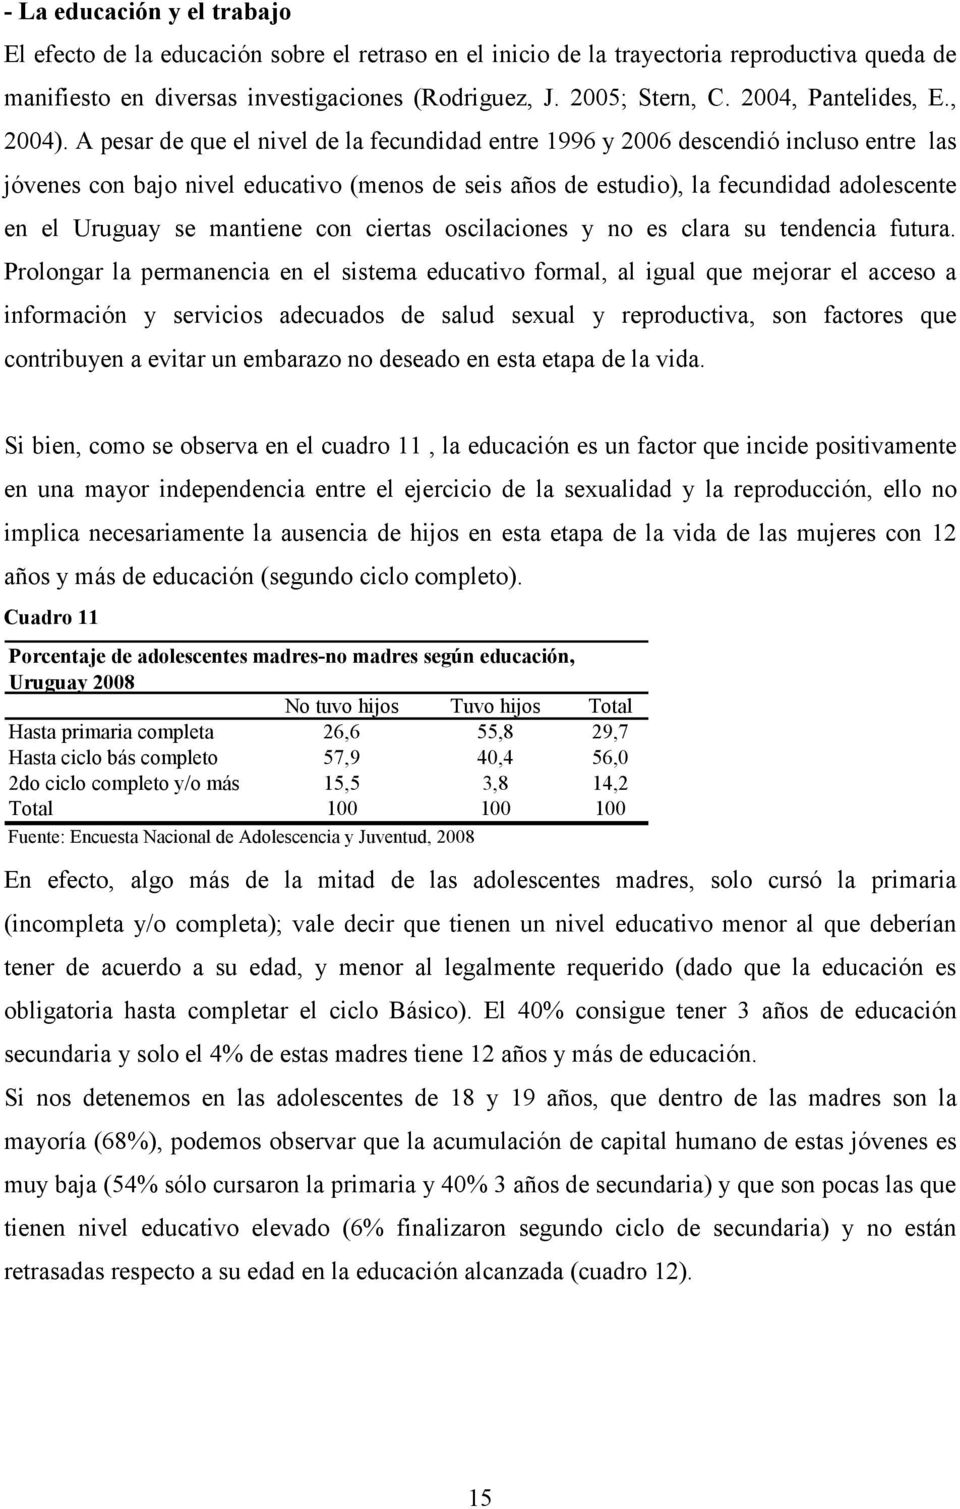 A pesar de que el nivel de la fecundidad entre 1996 y 2006 descendió incluso entre las jóvenes con bajo nivel educativo (menos de seis años de estudio), la fecundidad adolescente en el Uruguay se